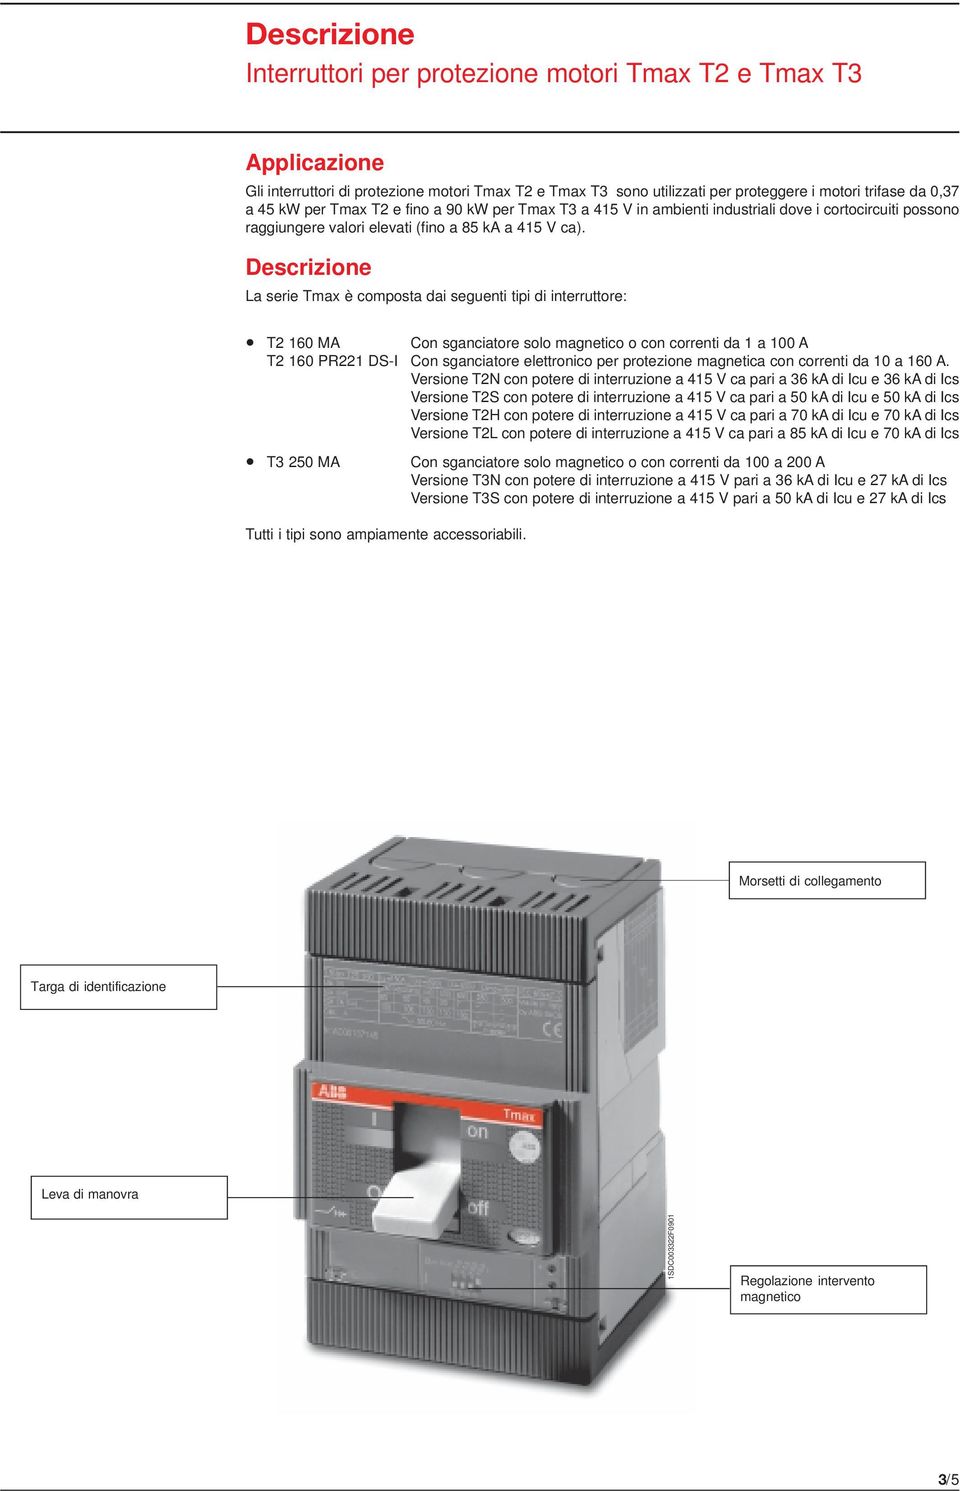 Descrizione La serie Tmax è composta dai seguenti tipi di interruttore: T2 160 MA Con sganciatore solo magnetico o con correnti da 1 a 100 A T2 160 PR221 DS-I Con sganciatore elettronico per